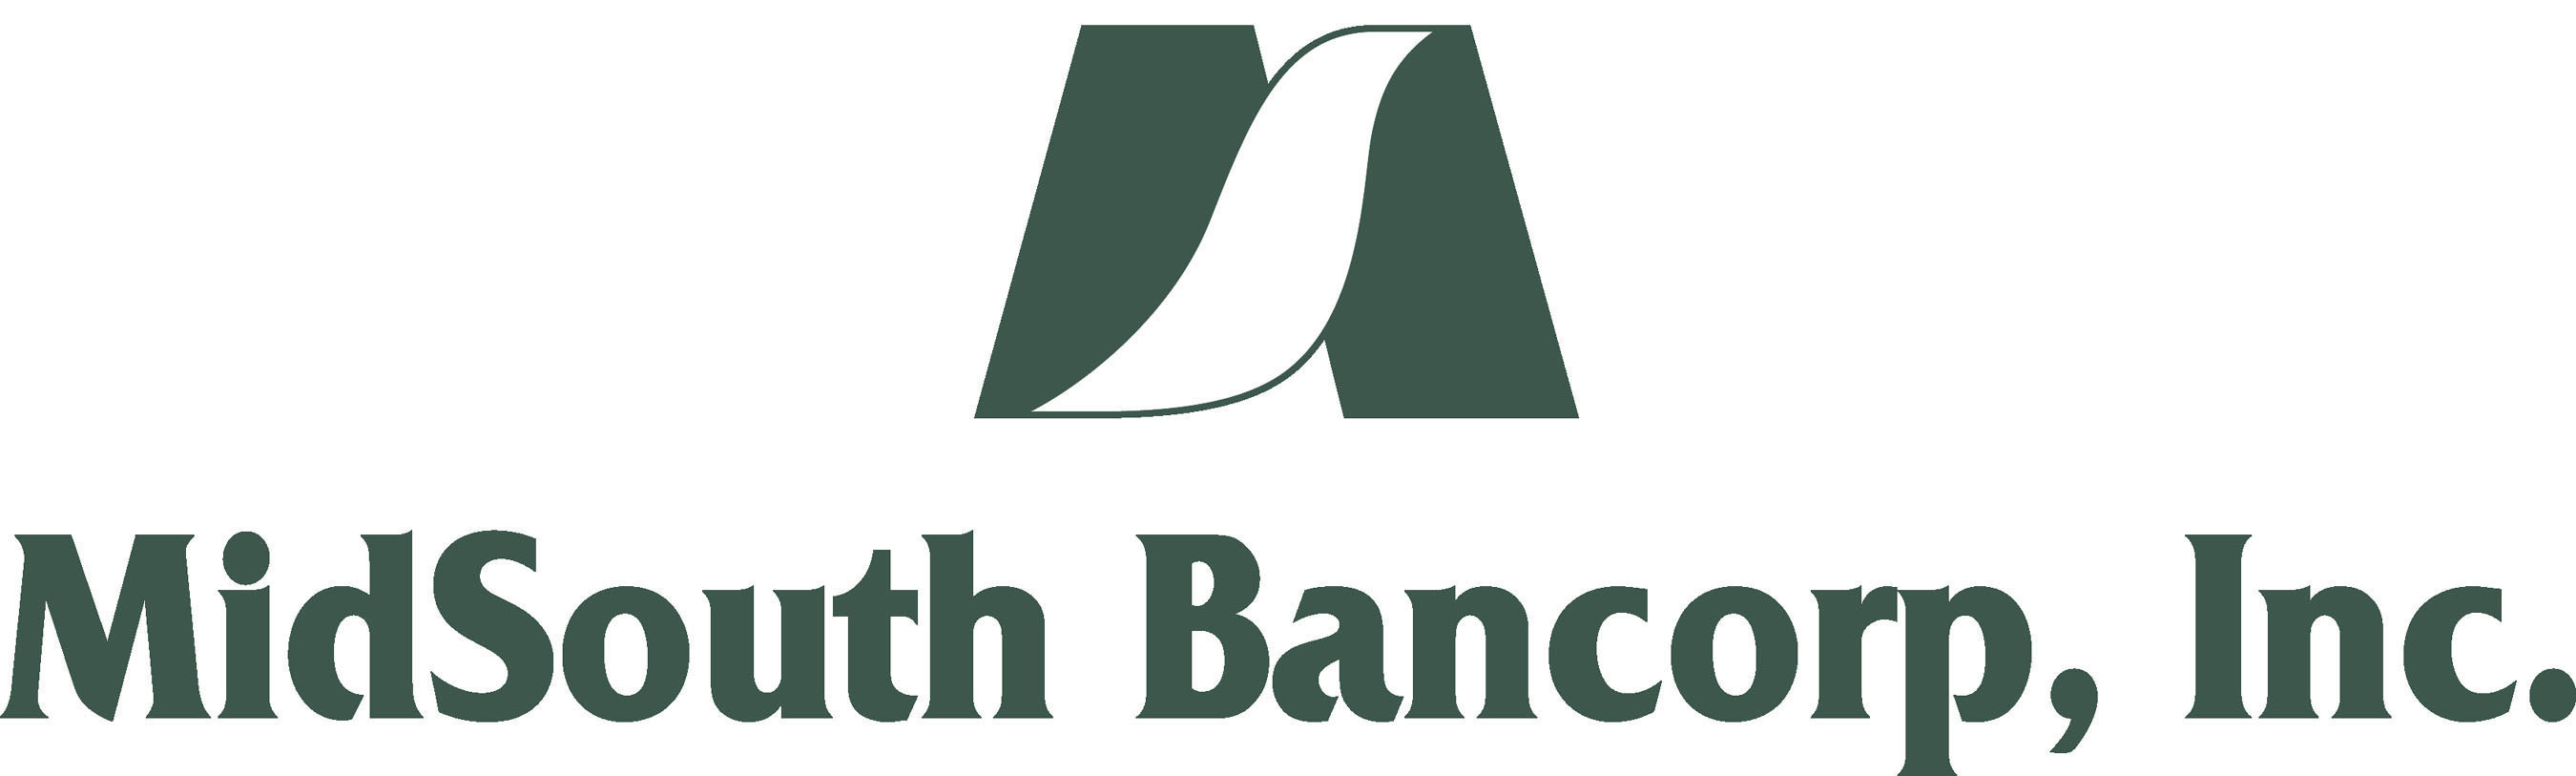 MidSouth Bancorp, Inc. Logo. (PRNewsFoto/MidSouth Bancorp, Inc.) (PRNewsFoto/)